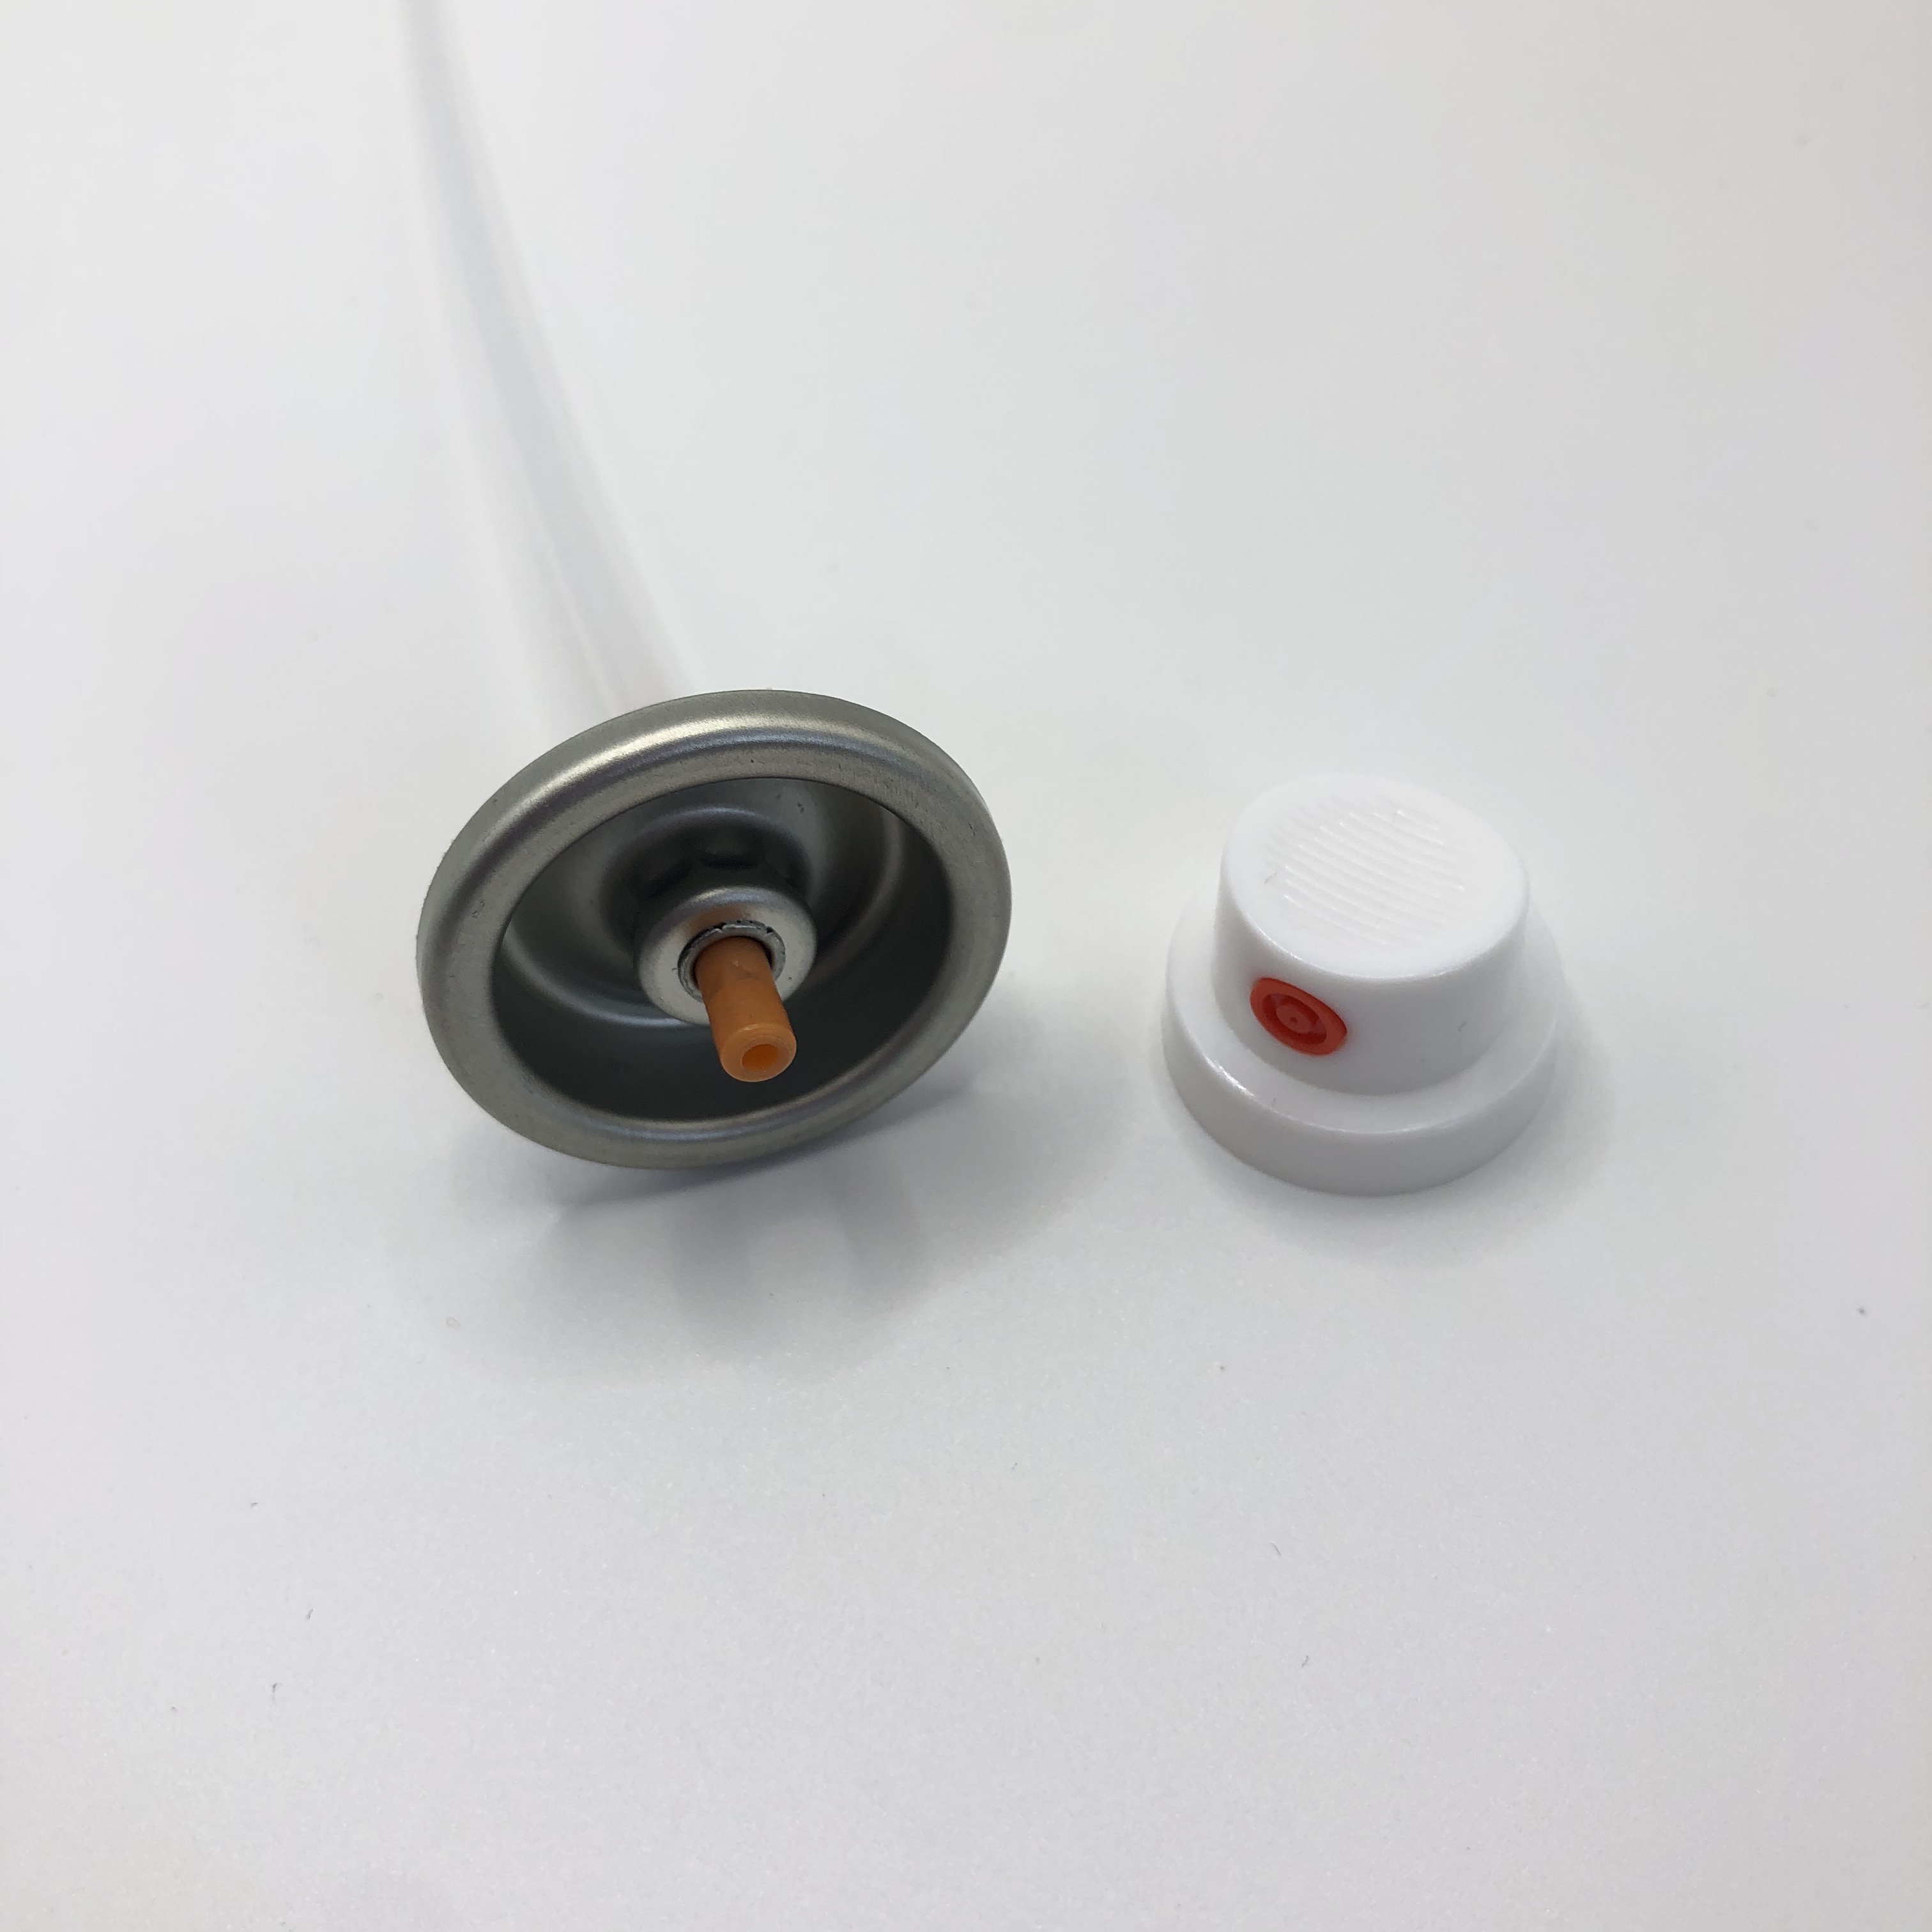 Válvula de pulverização de tinta de pressão ajustável versátil - Controle preciso para pintura profissional - durável e eficiente